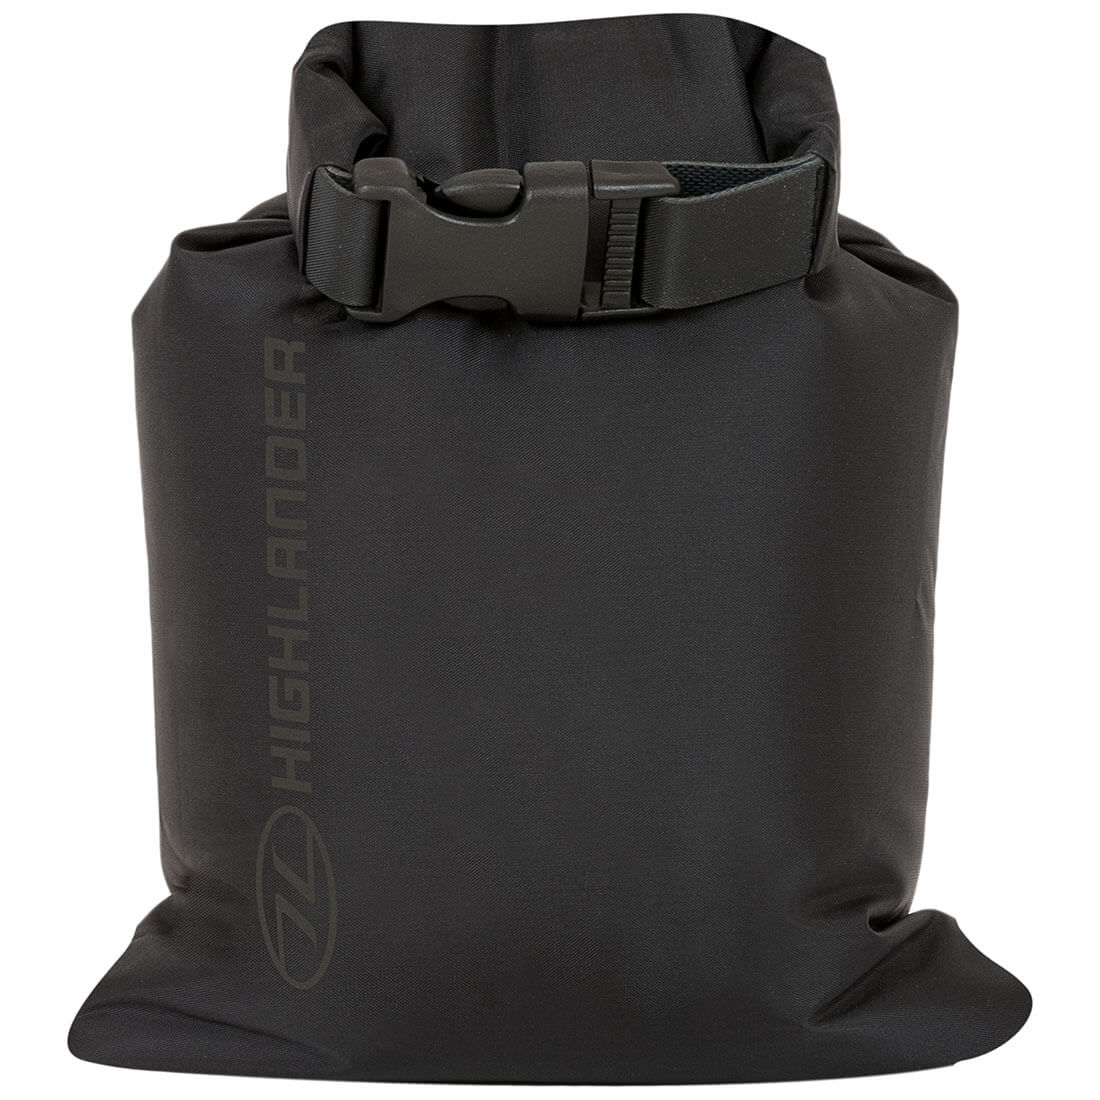 Highlander X-Lite Small Dry Bag Sack Liner - John Bull Clothing